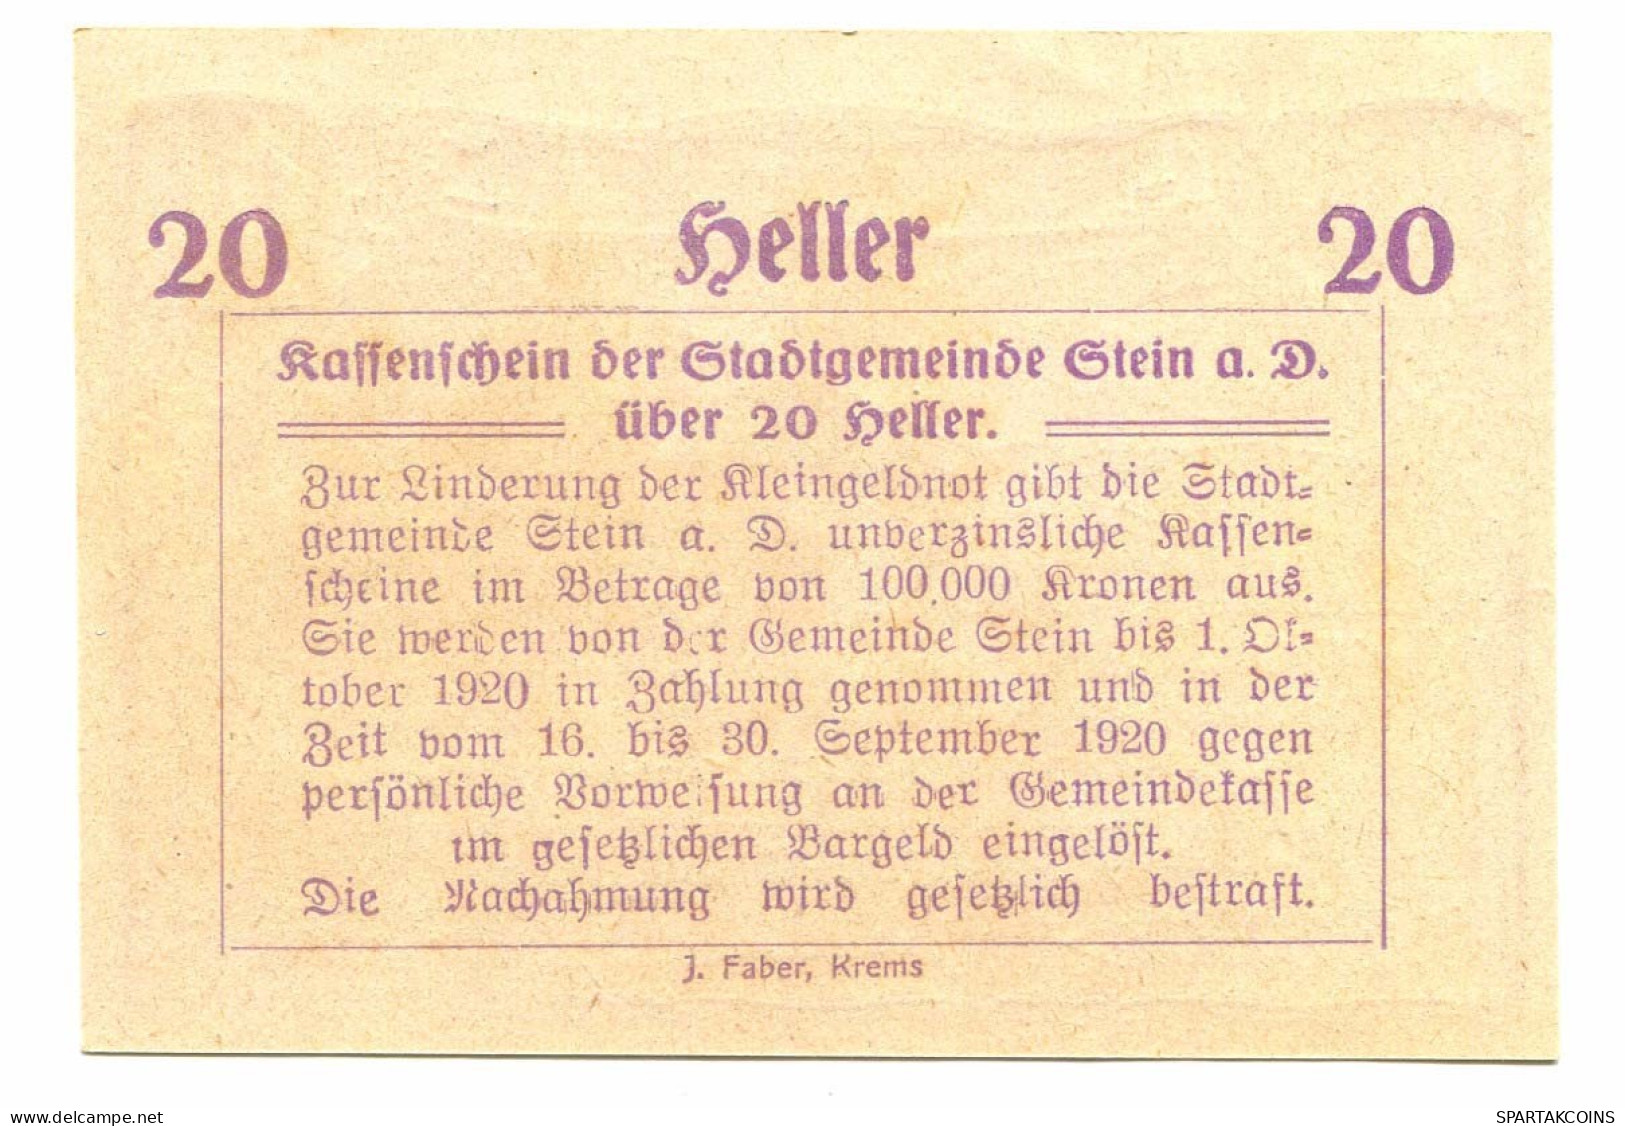 20 Heller 1920 STEIN Österreich UNC Notgeld Papiergeld Banknote #P10323 - [11] Local Banknote Issues